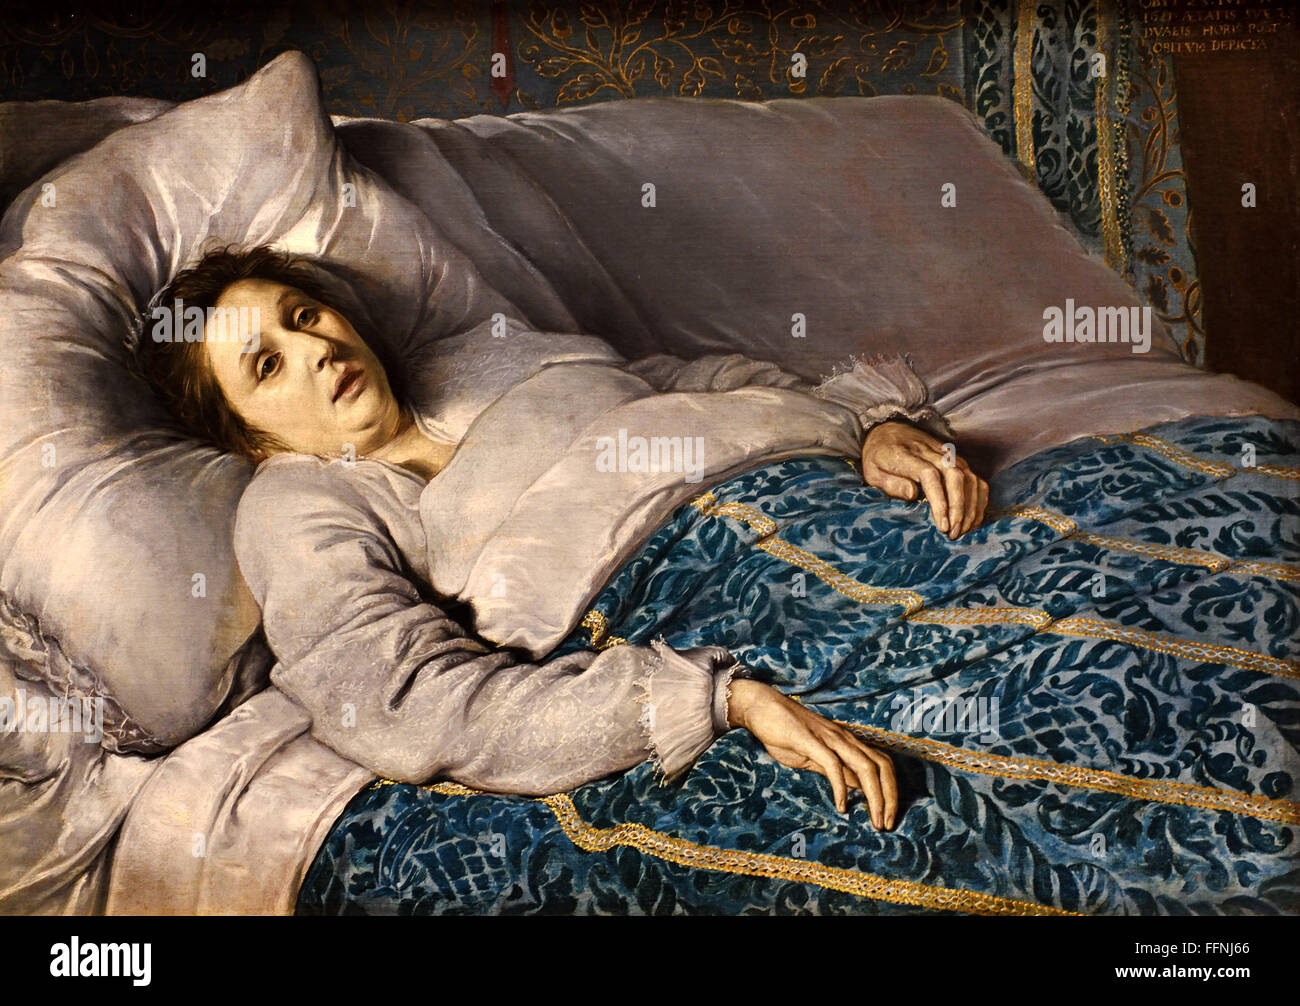 Jeune femme sur son lit de mort anonyme, école flamande 1621 Belgique Belge  Photo Stock - Alamy